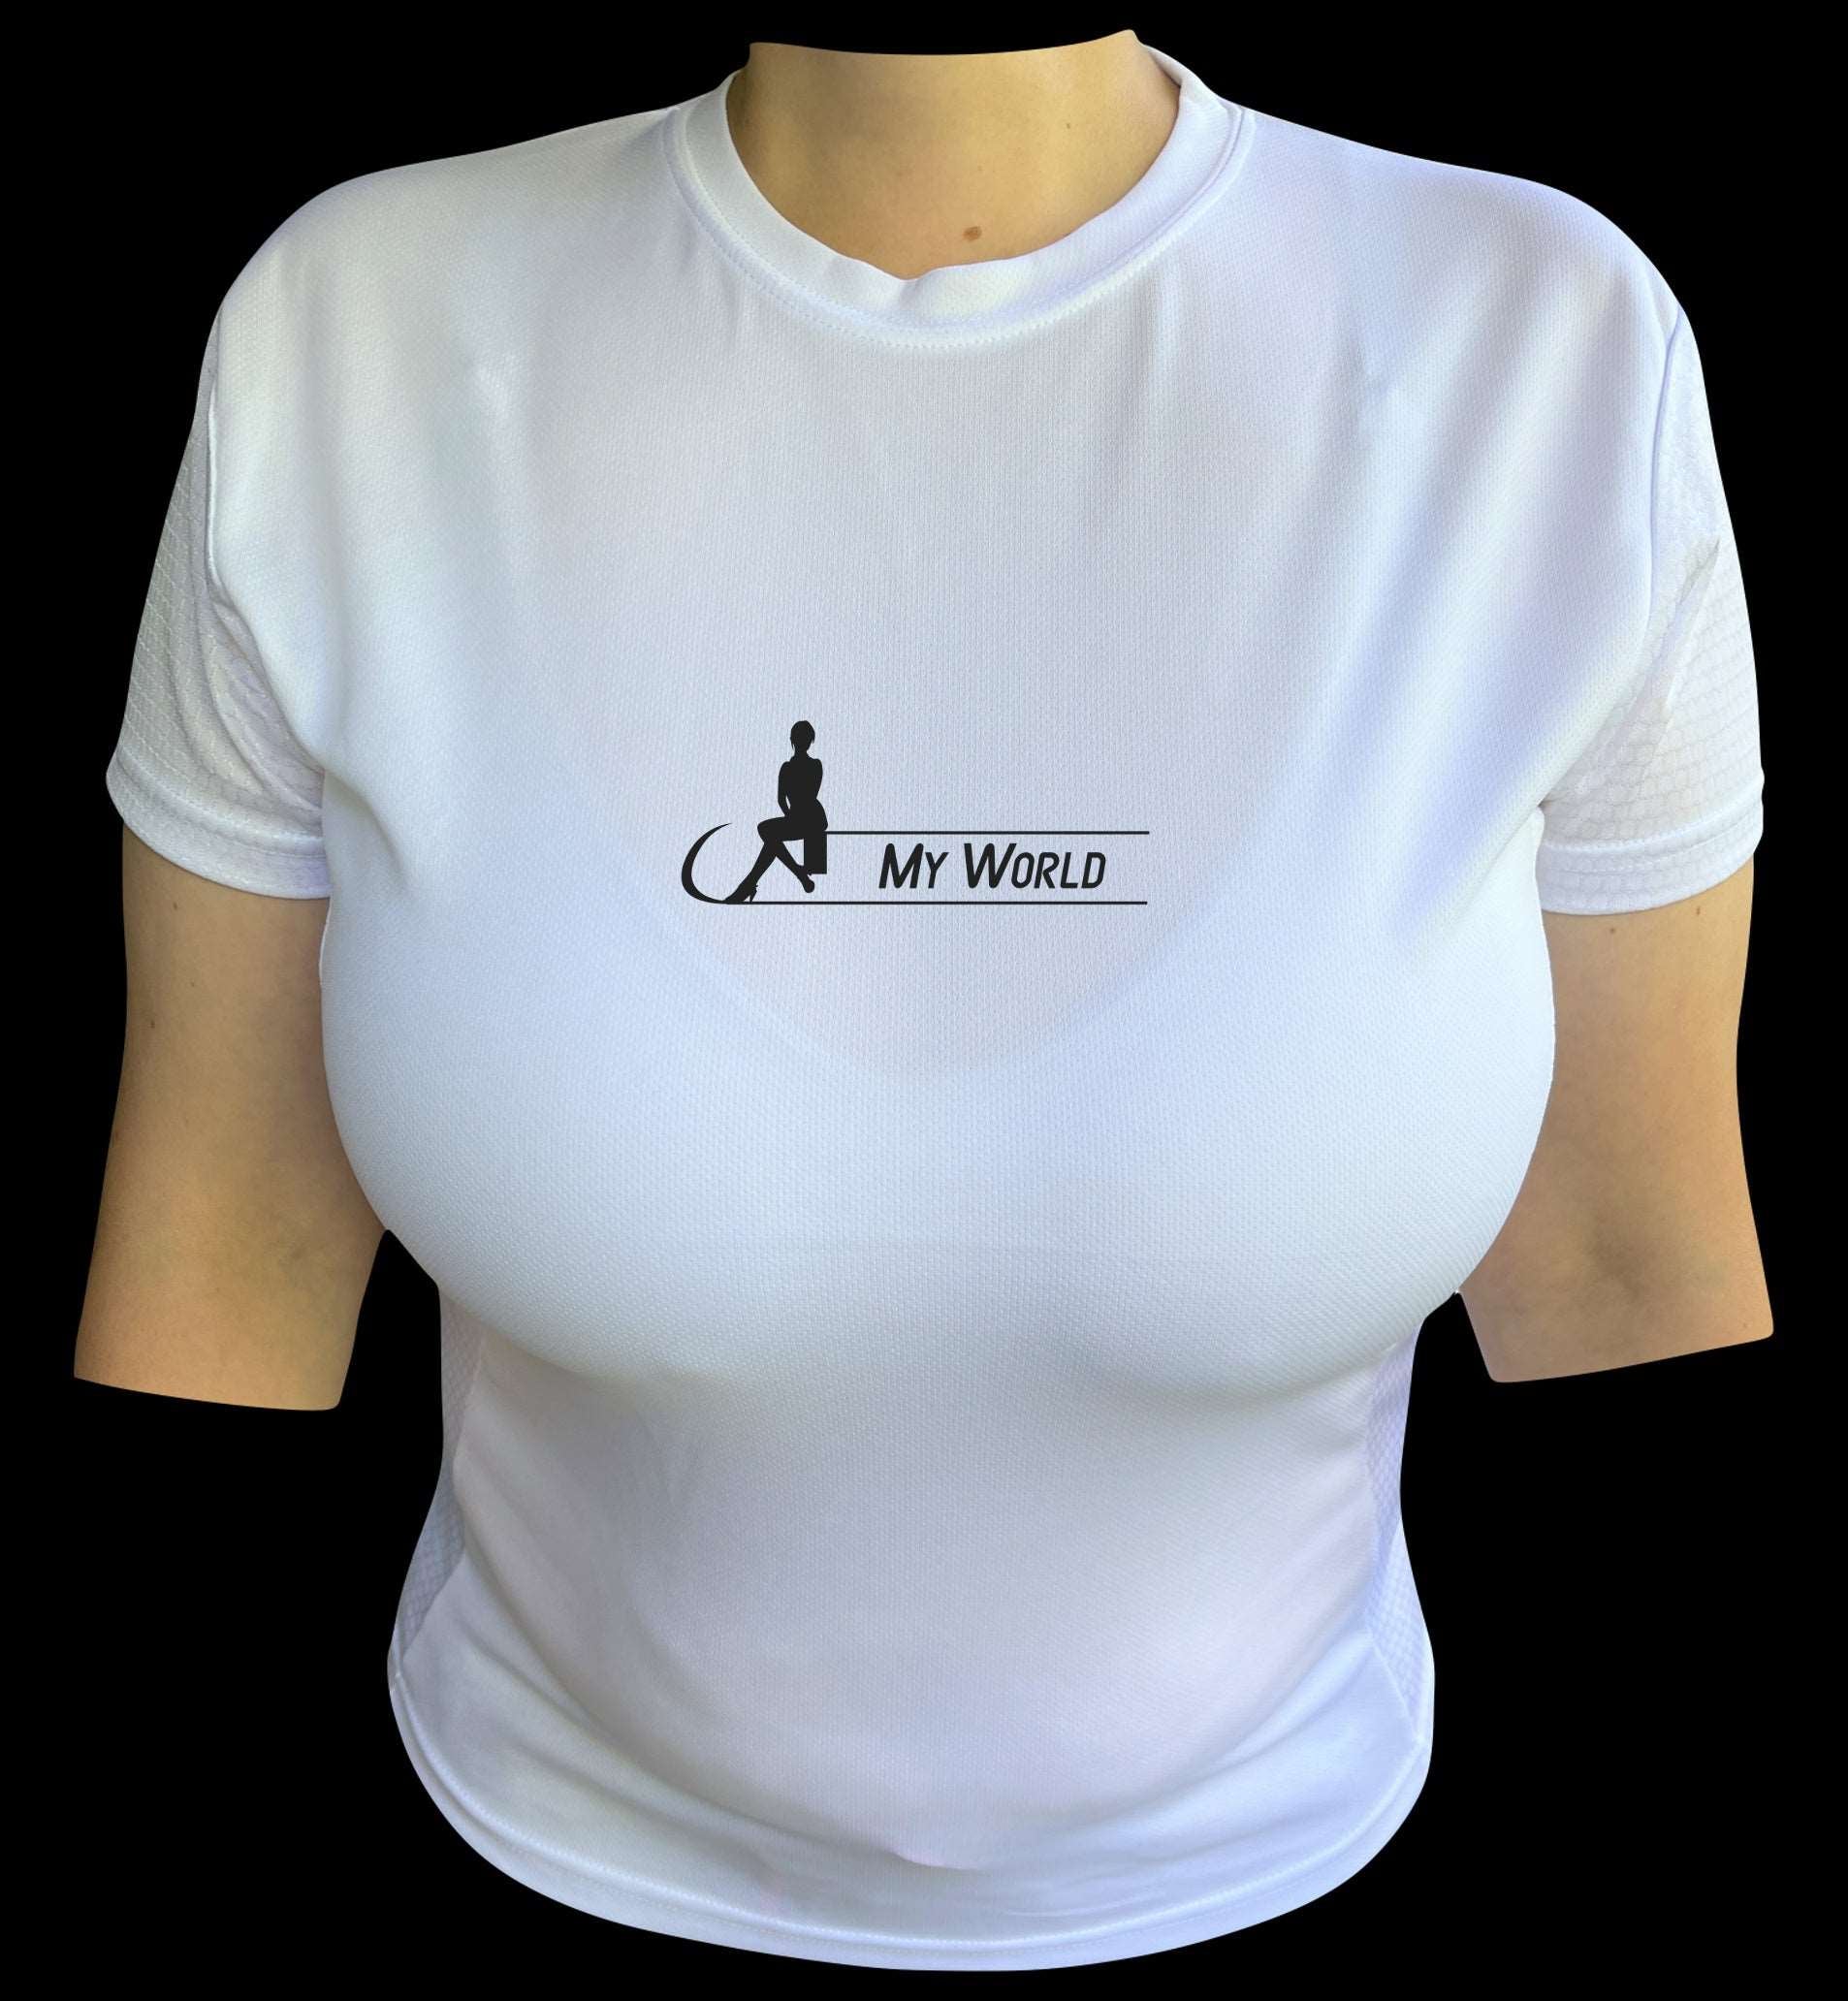 Girl's Motivational T-Shirt Designs